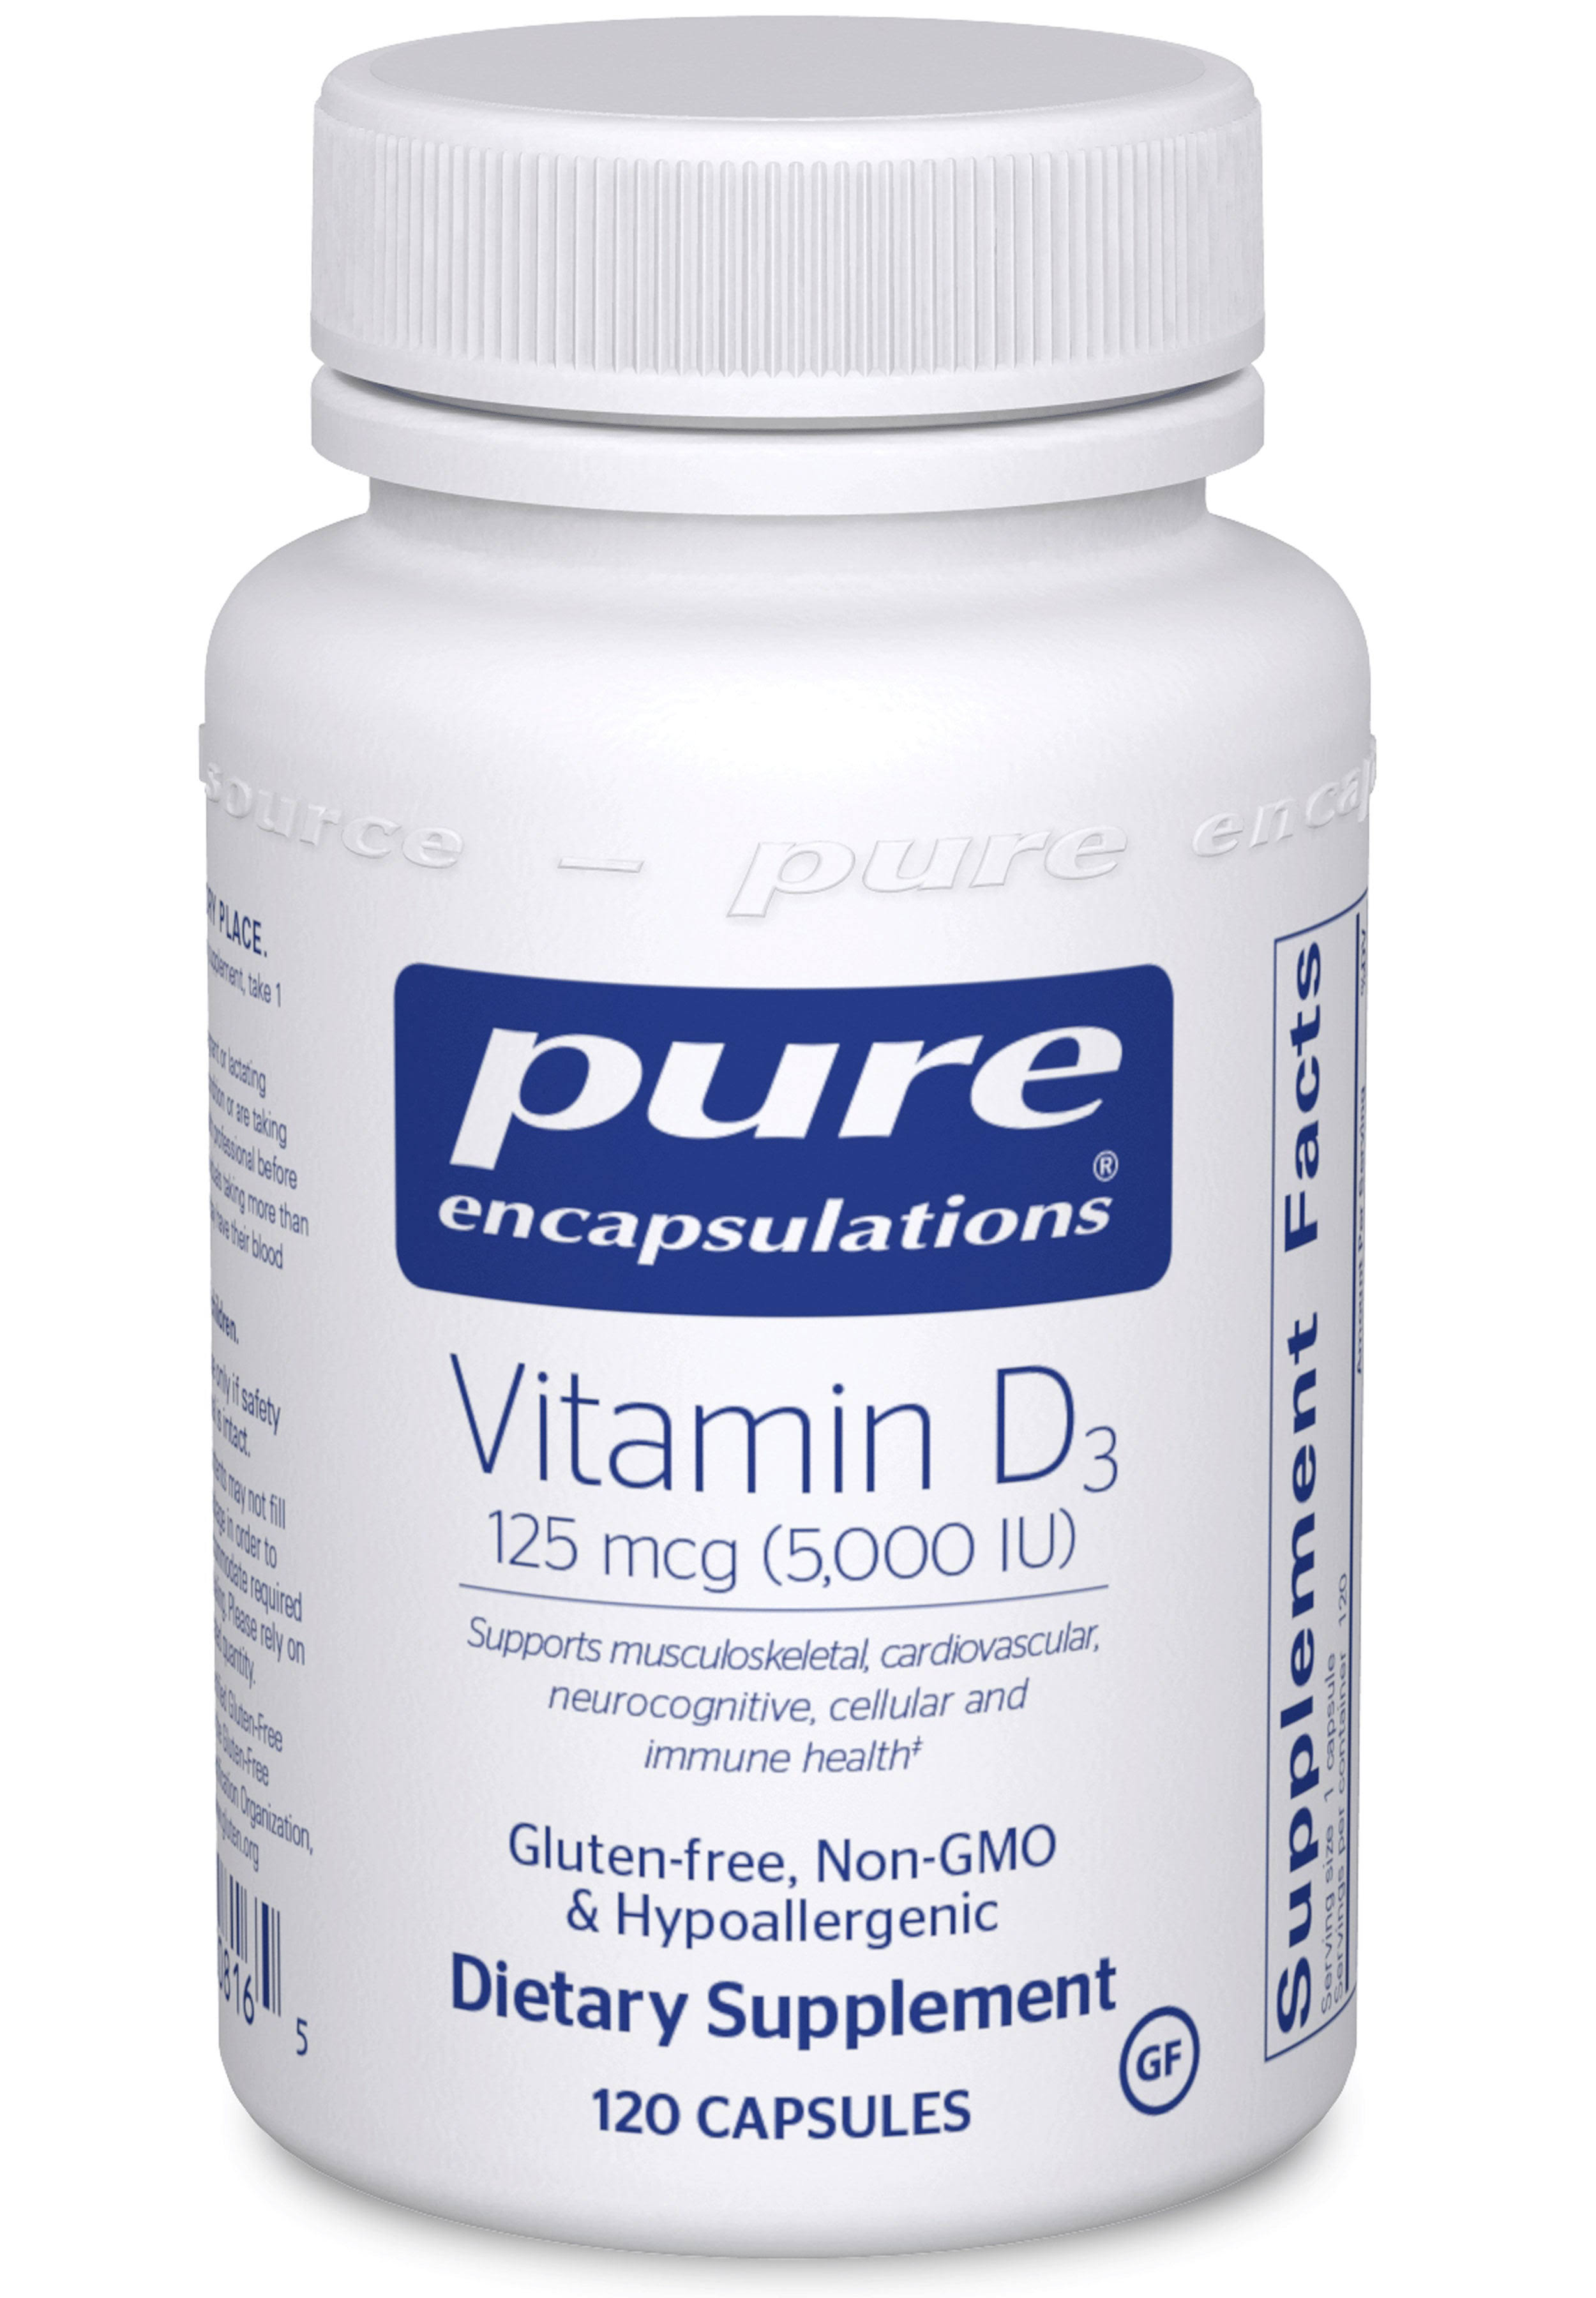 Pure Encapsulations Vitamin D3 5,000 IU Vegetable Capsules - x120